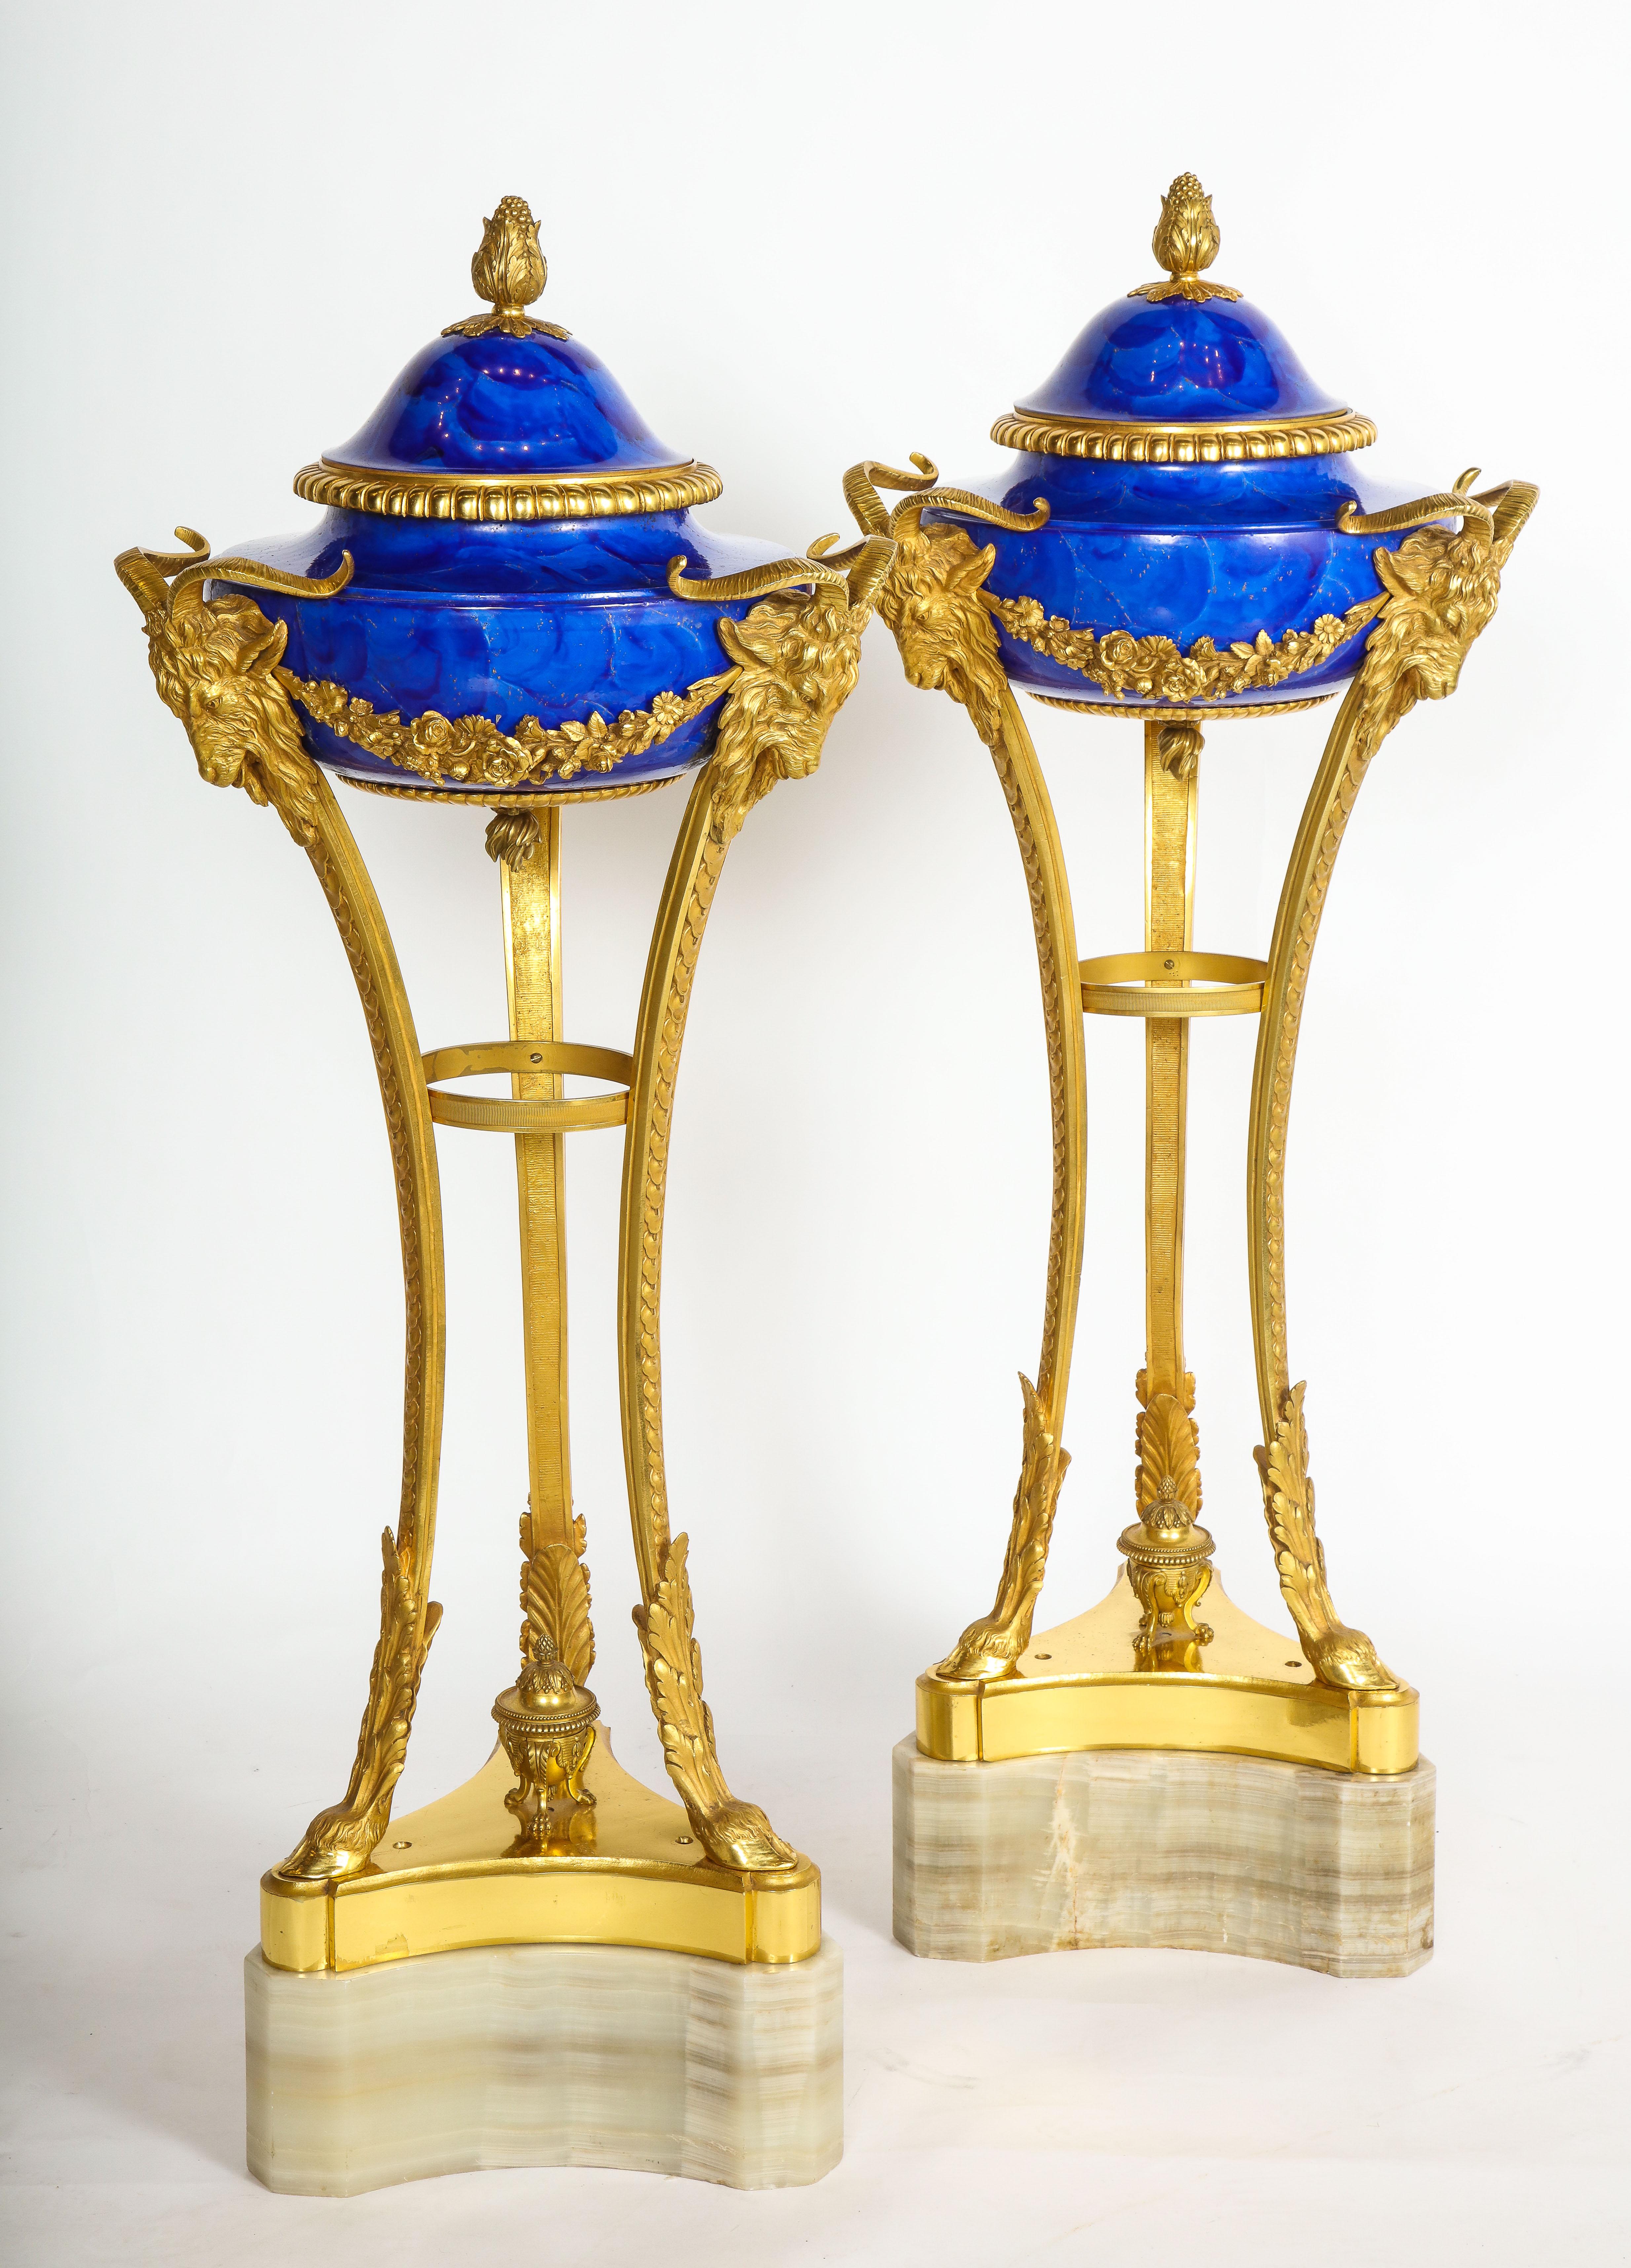 Monumentales Paar von Athenern/Cassoulets aus Sevres-Porzellan im Stil Ludwigs XVI. auf einem dreieckigen Onyxsockel, vermutlich für den König in Auftrag gegeben. Diese sind wirklich ein Meisterwerk. Jeder Teil der montierten Bronze ist in